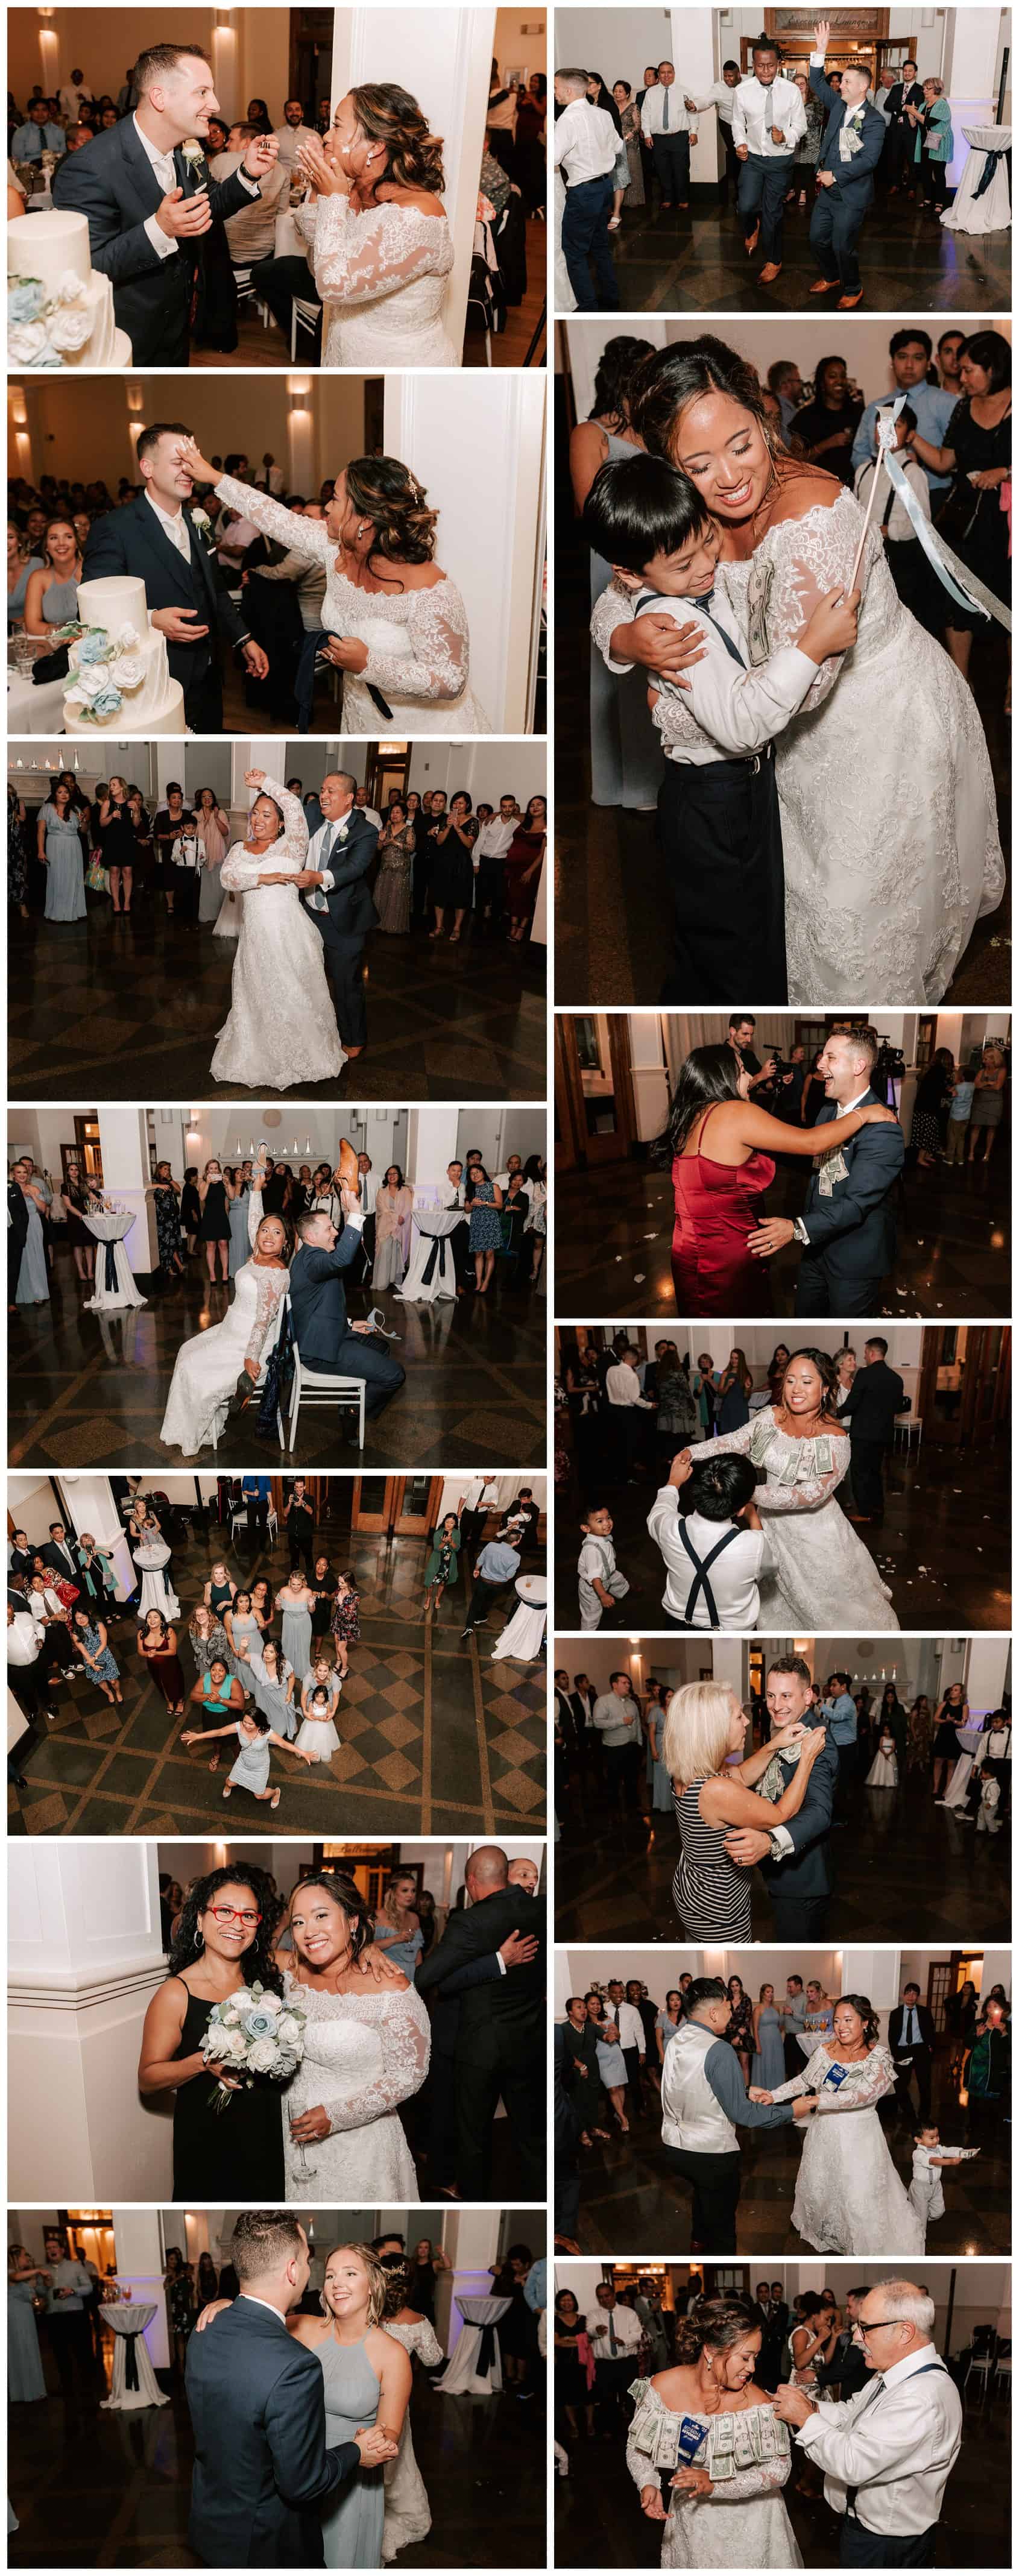 Monte Cristo Ballroom wedding reception photos by Luma Weddings